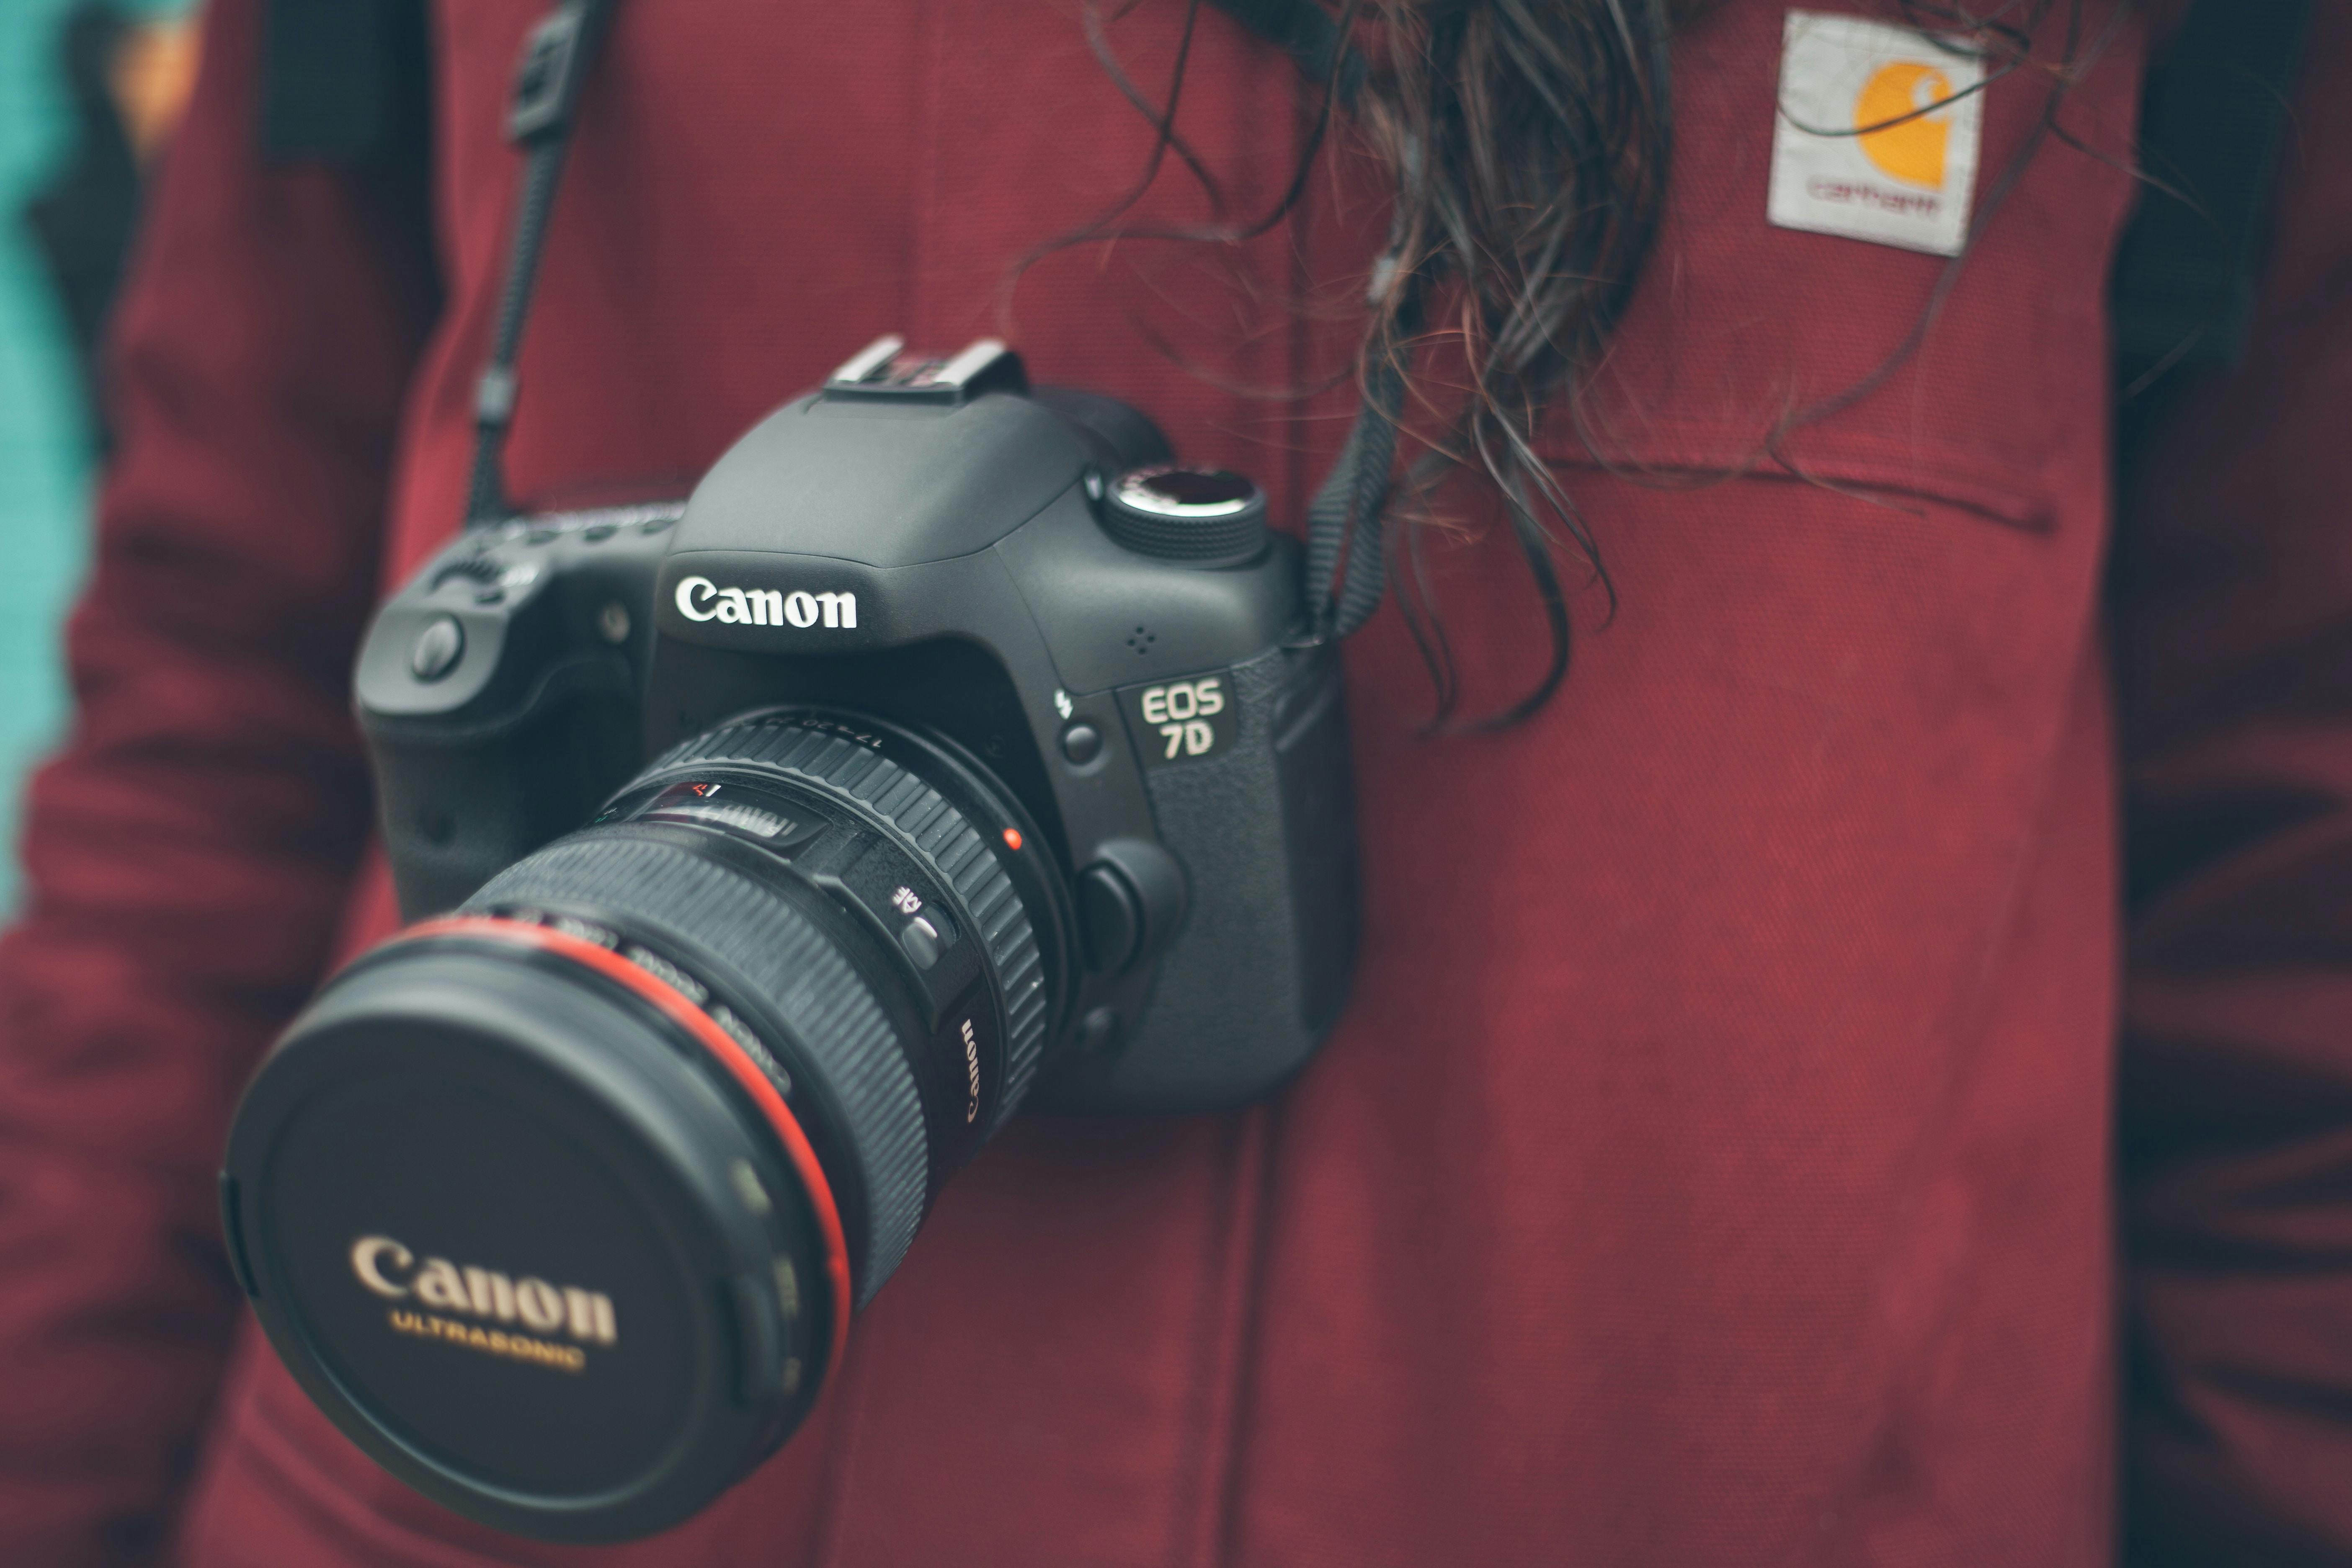 en digitalkamera hänger runt halsen på en person med en röd bygel i bakgrunden - typer av kameror | digital